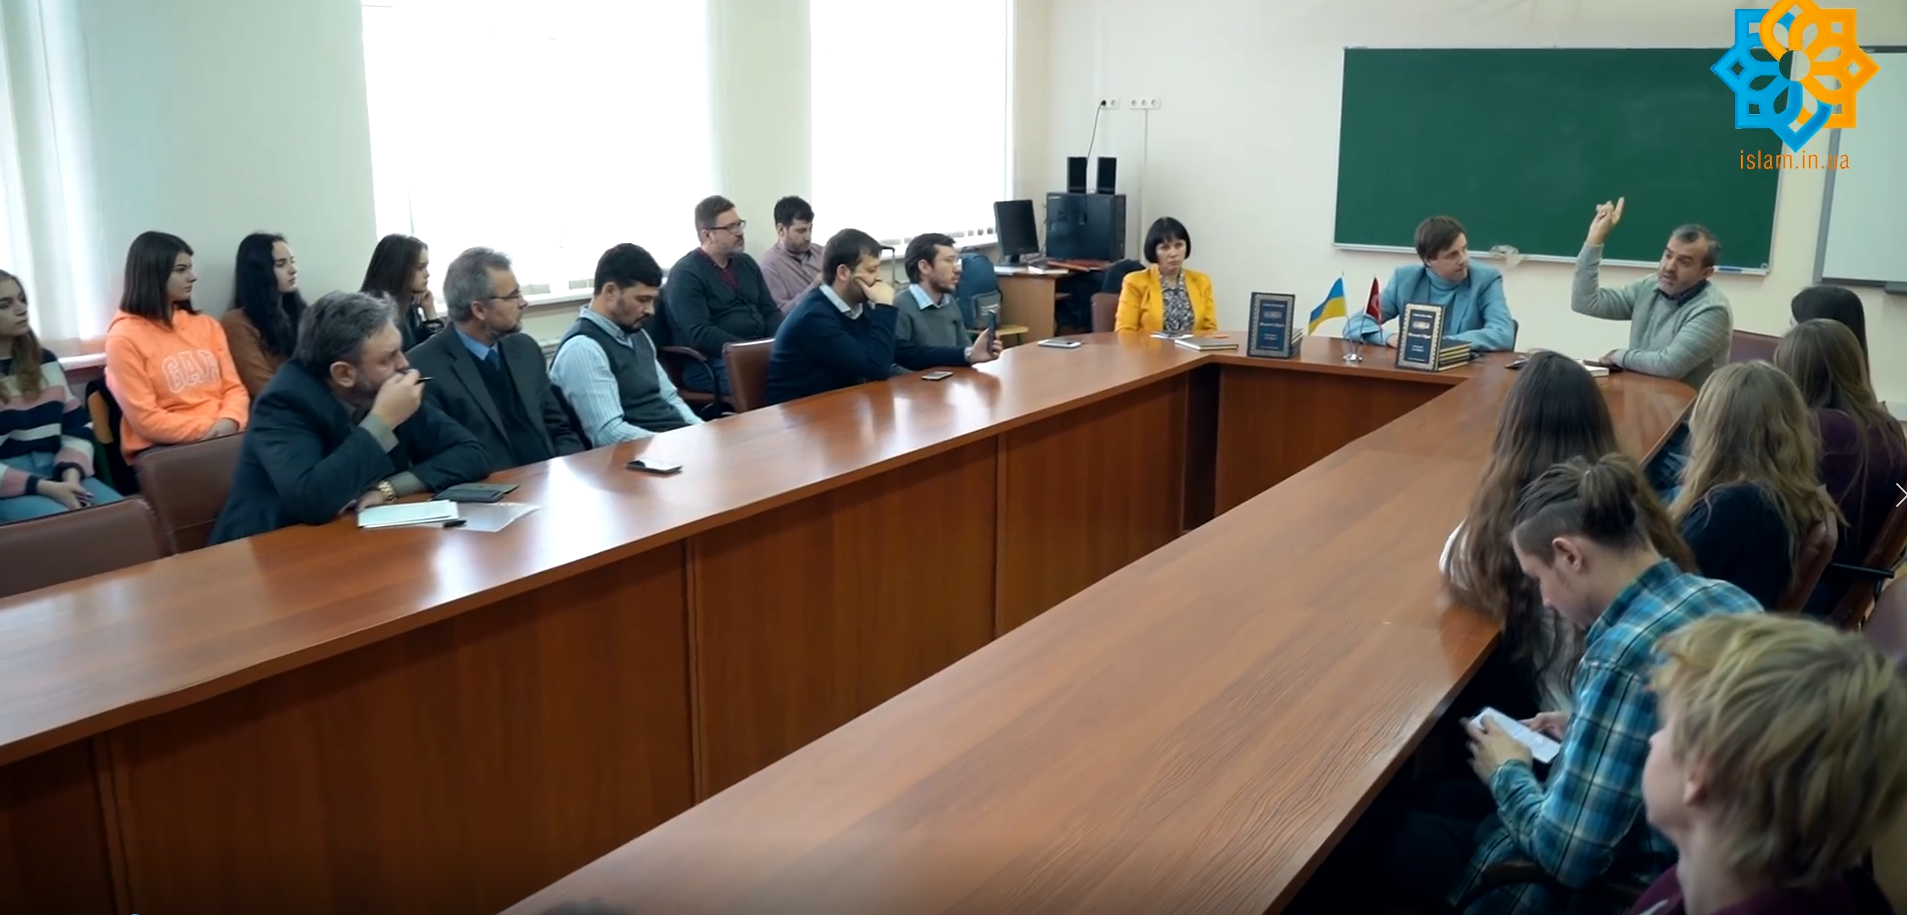 Ukrayna Devlet Üniversitesinde Mesnevi-i Nuriye Tanıtımı Yapıldı